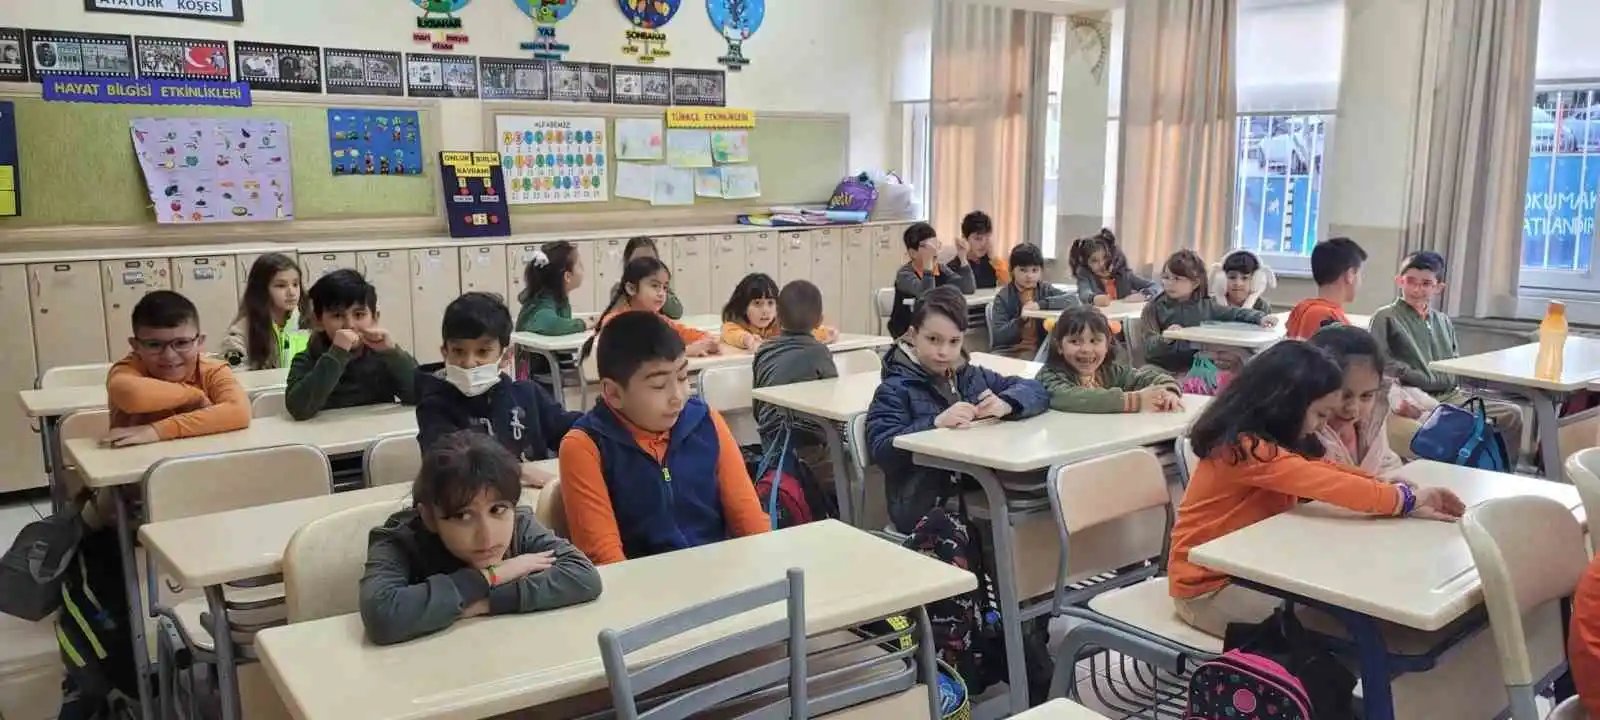 Deprem nedeniyle verilen aranın ardından 71 ilde öğrenciler ders başı yaptı
